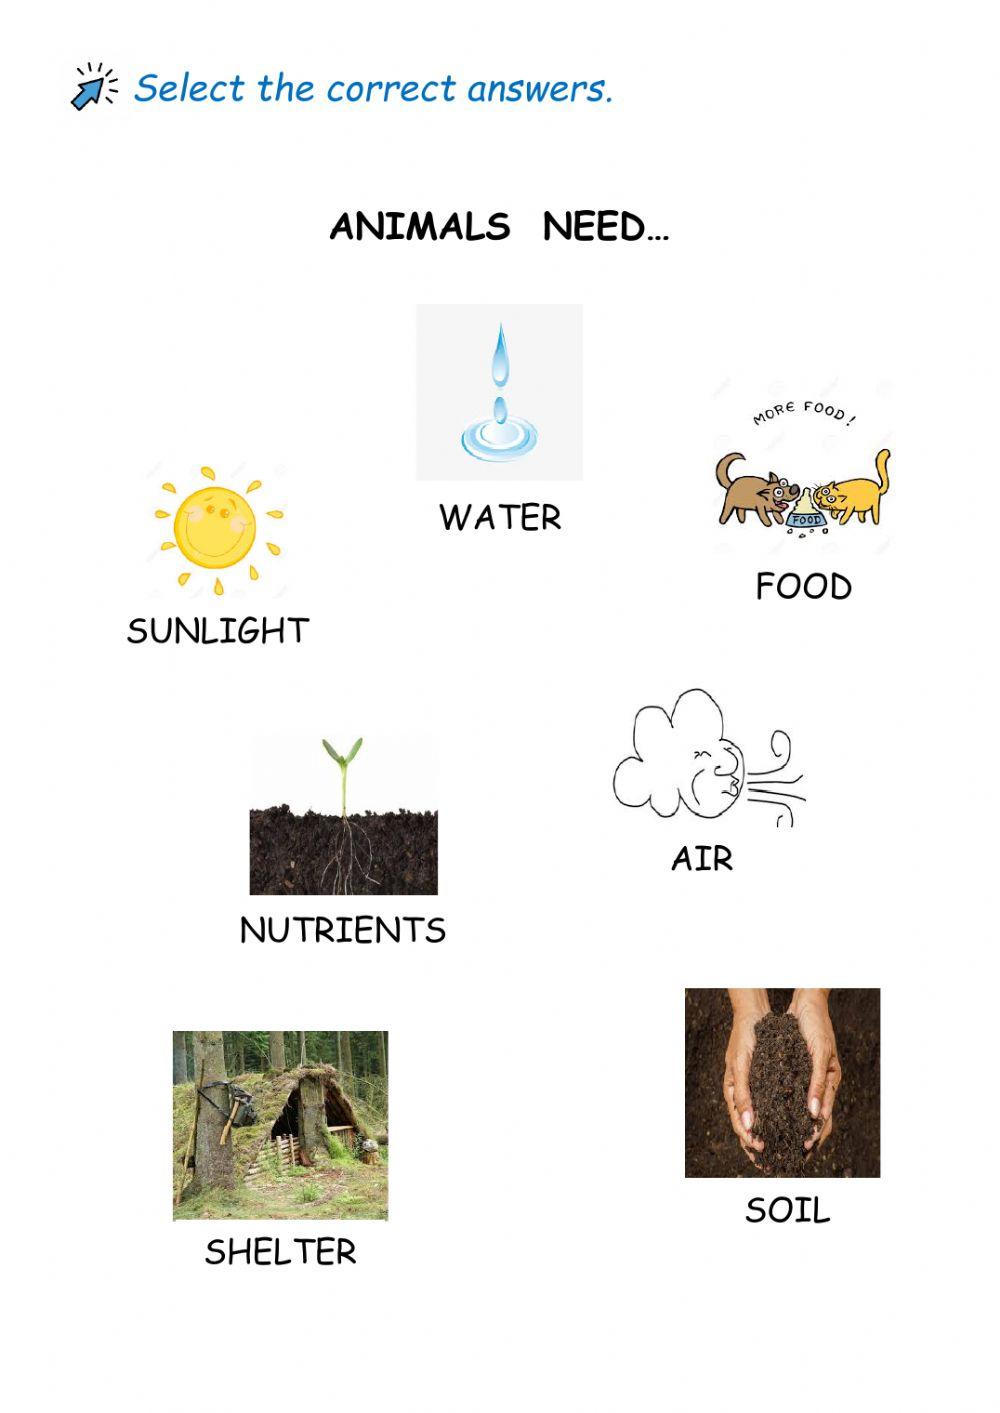 Animals need...